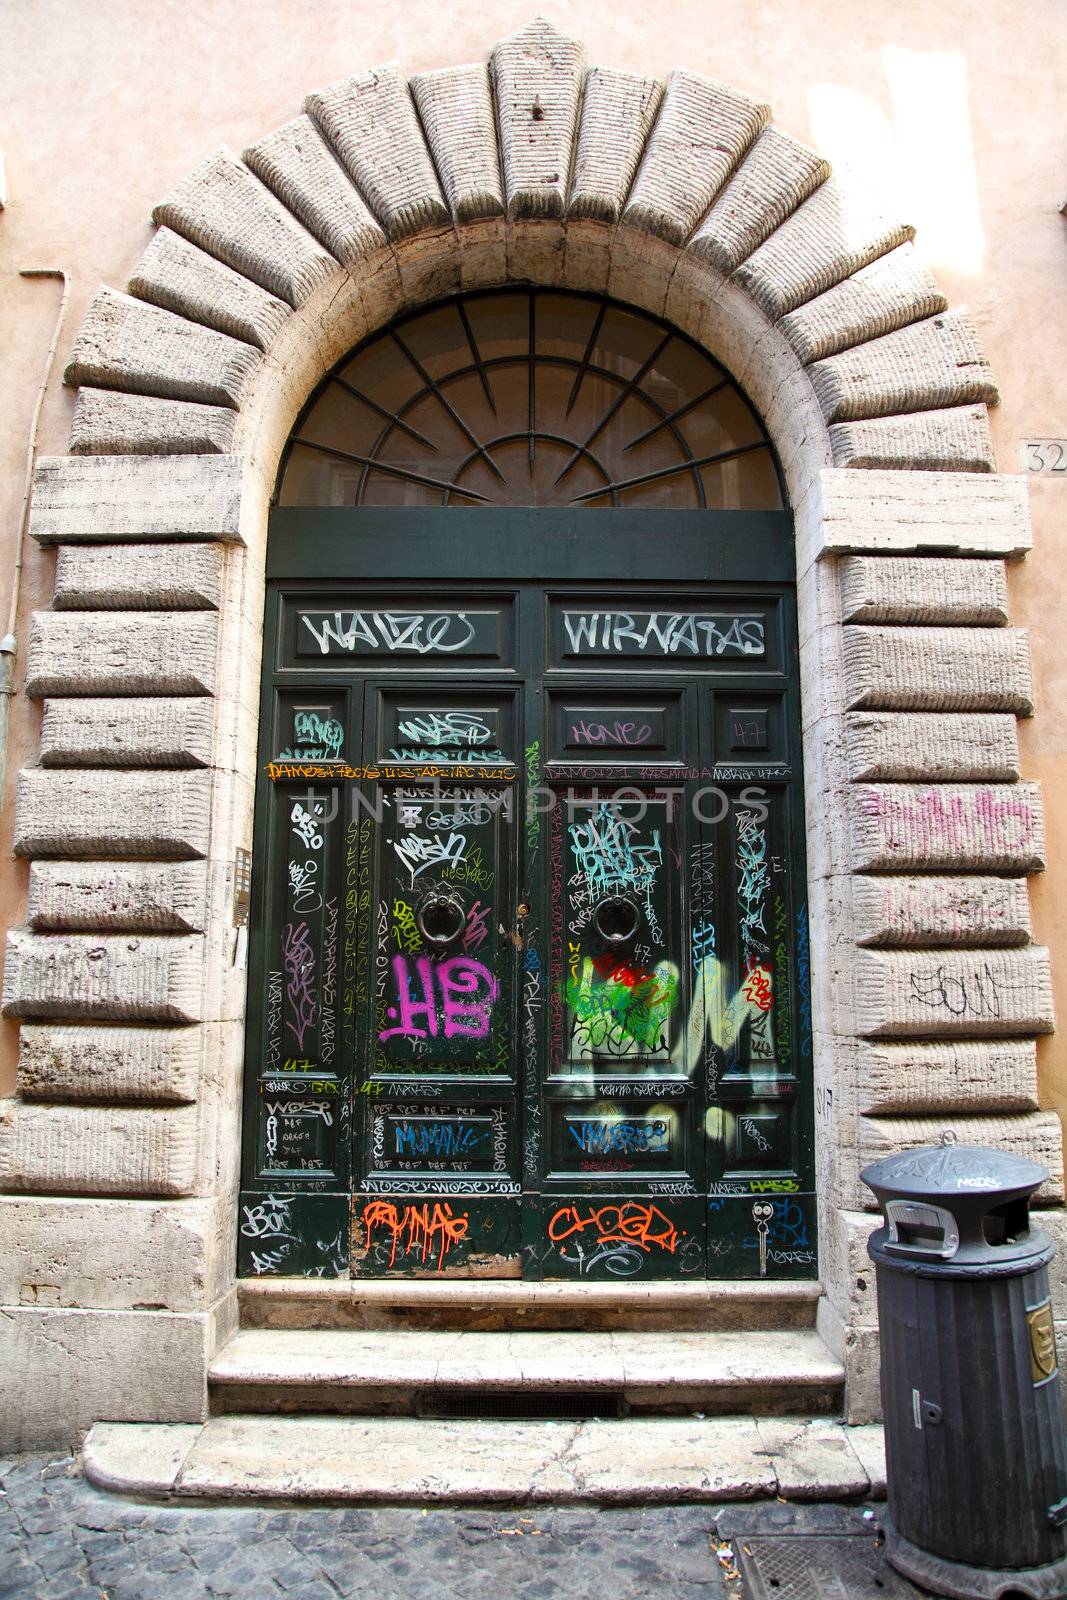 Graffiti Doors in Rome by shamtor